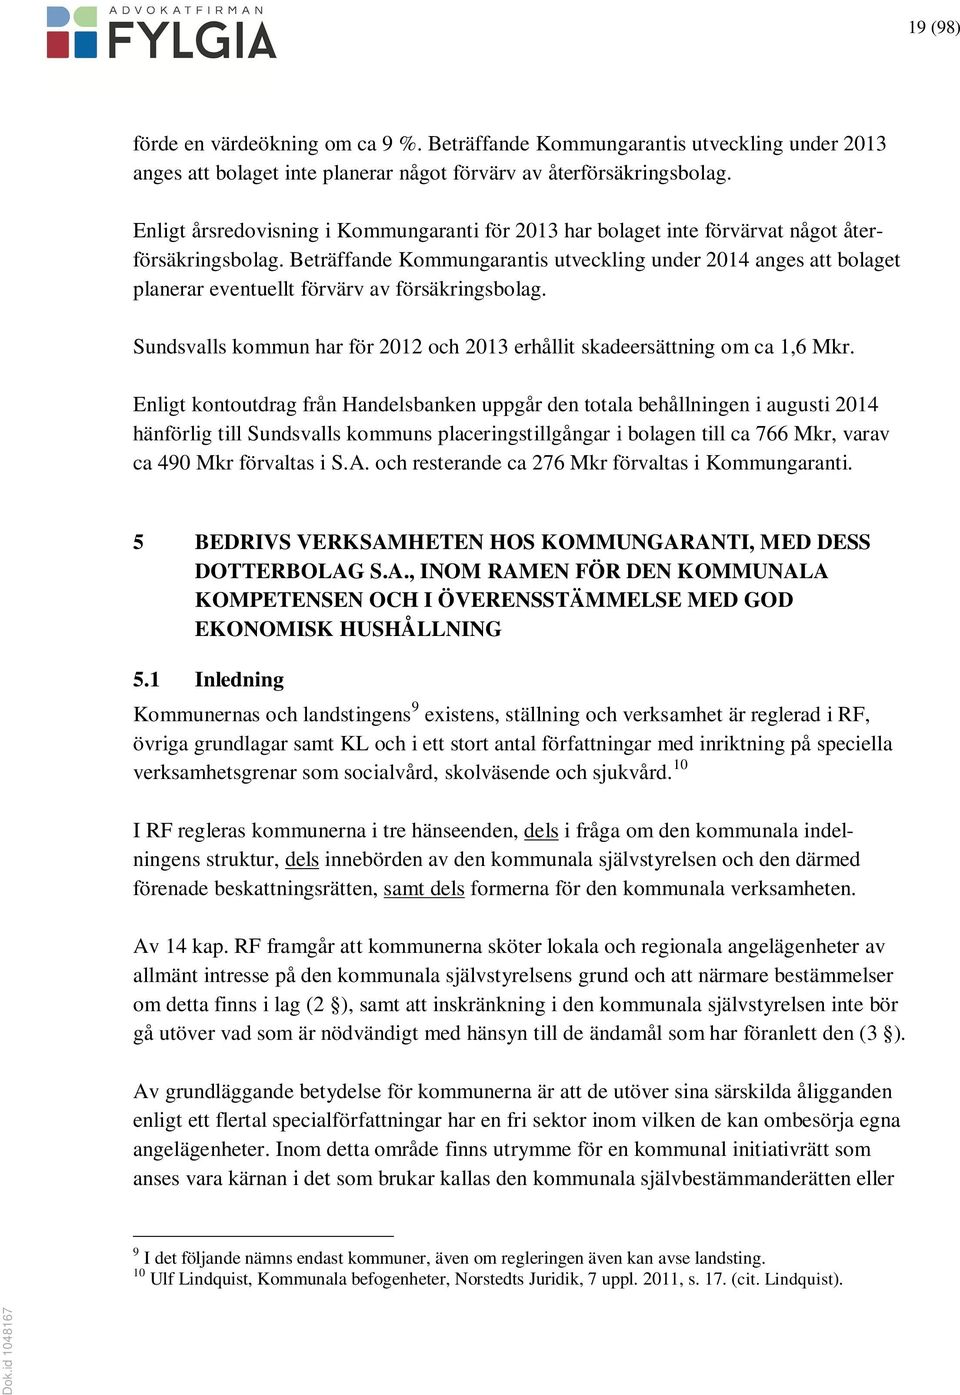 Beträffande Kommungarantis utveckling under 2014 anges att bolaget planerar eventuellt förvärv av försäkringsbolag. Sundsvalls kommun har för 2012 och 2013 erhållit skadeersättning om ca 1,6 Mkr.